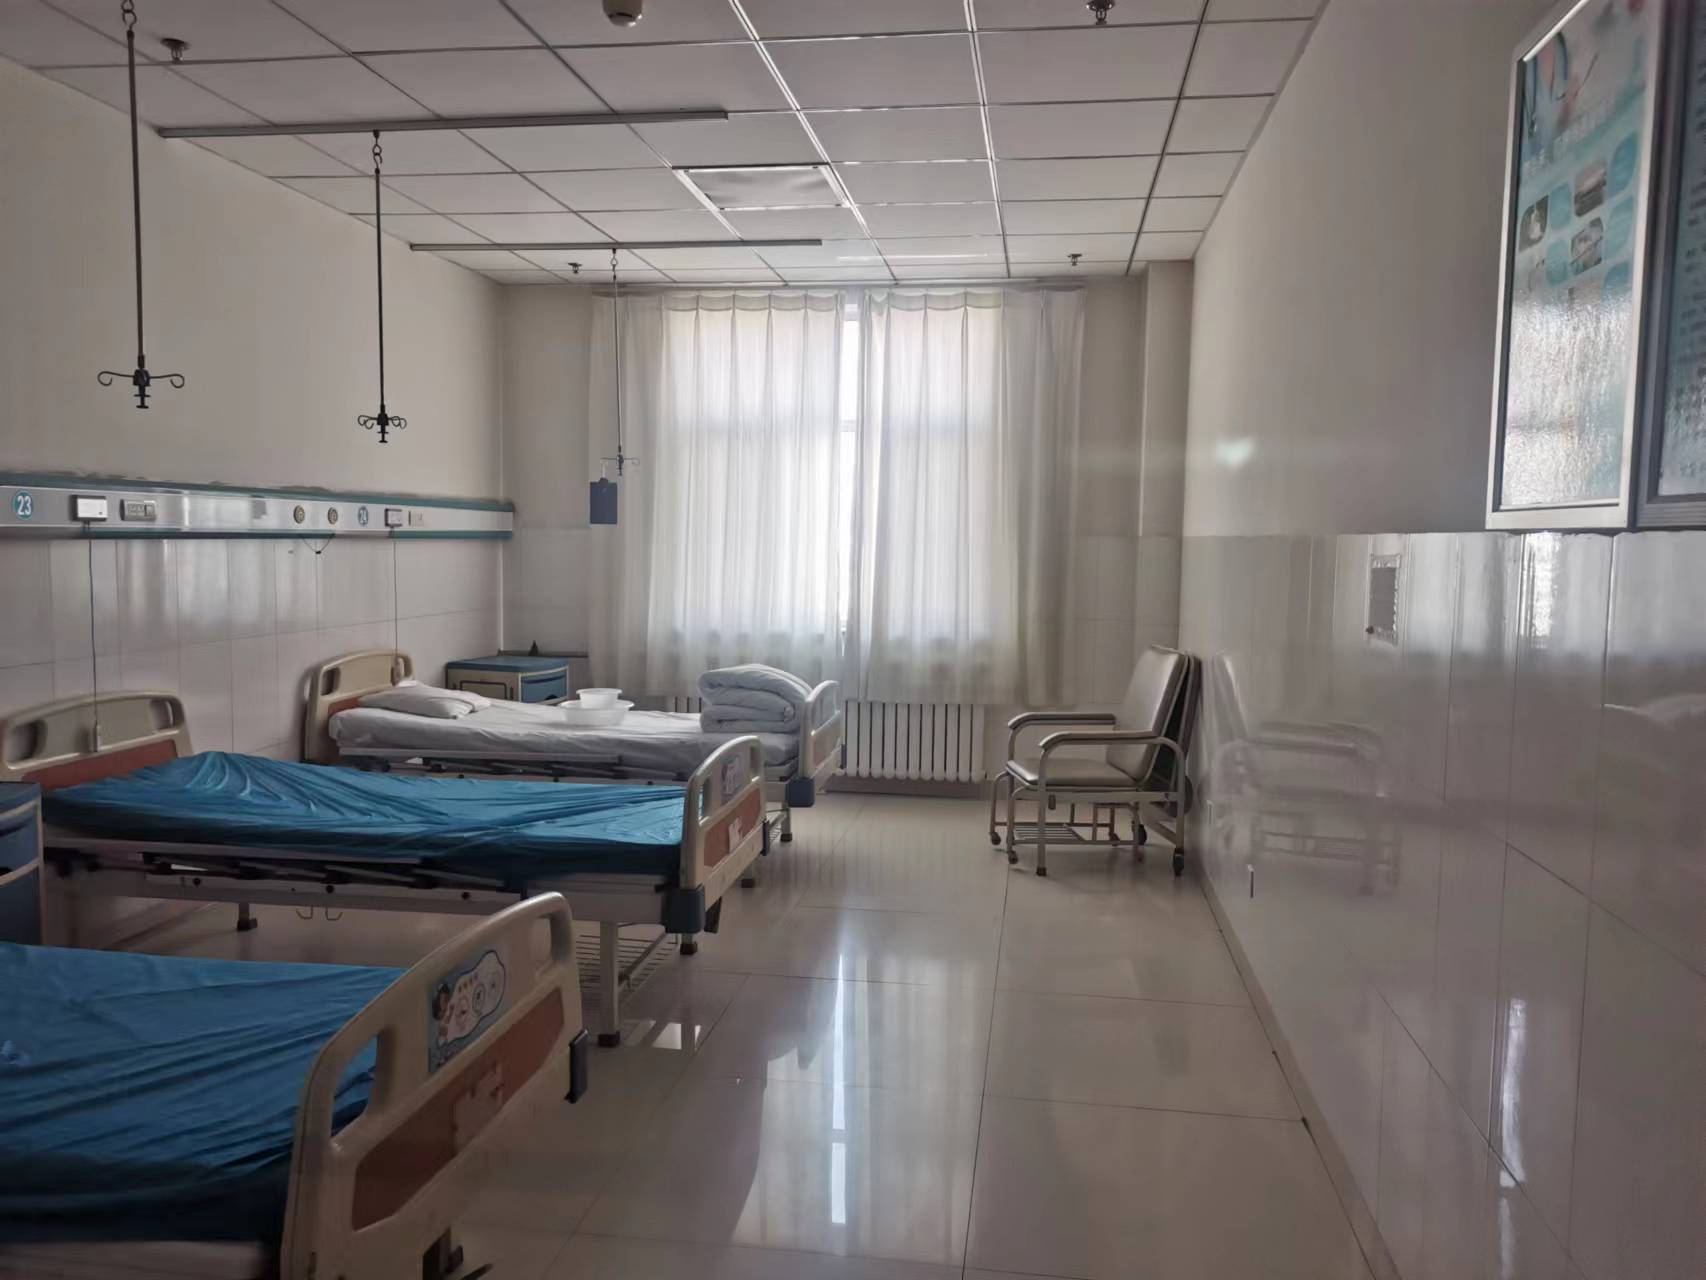 临近年关，北京大学人民医院怀来院区住院部的空病床变多了。 澎湃新闻记者 刘璐 图